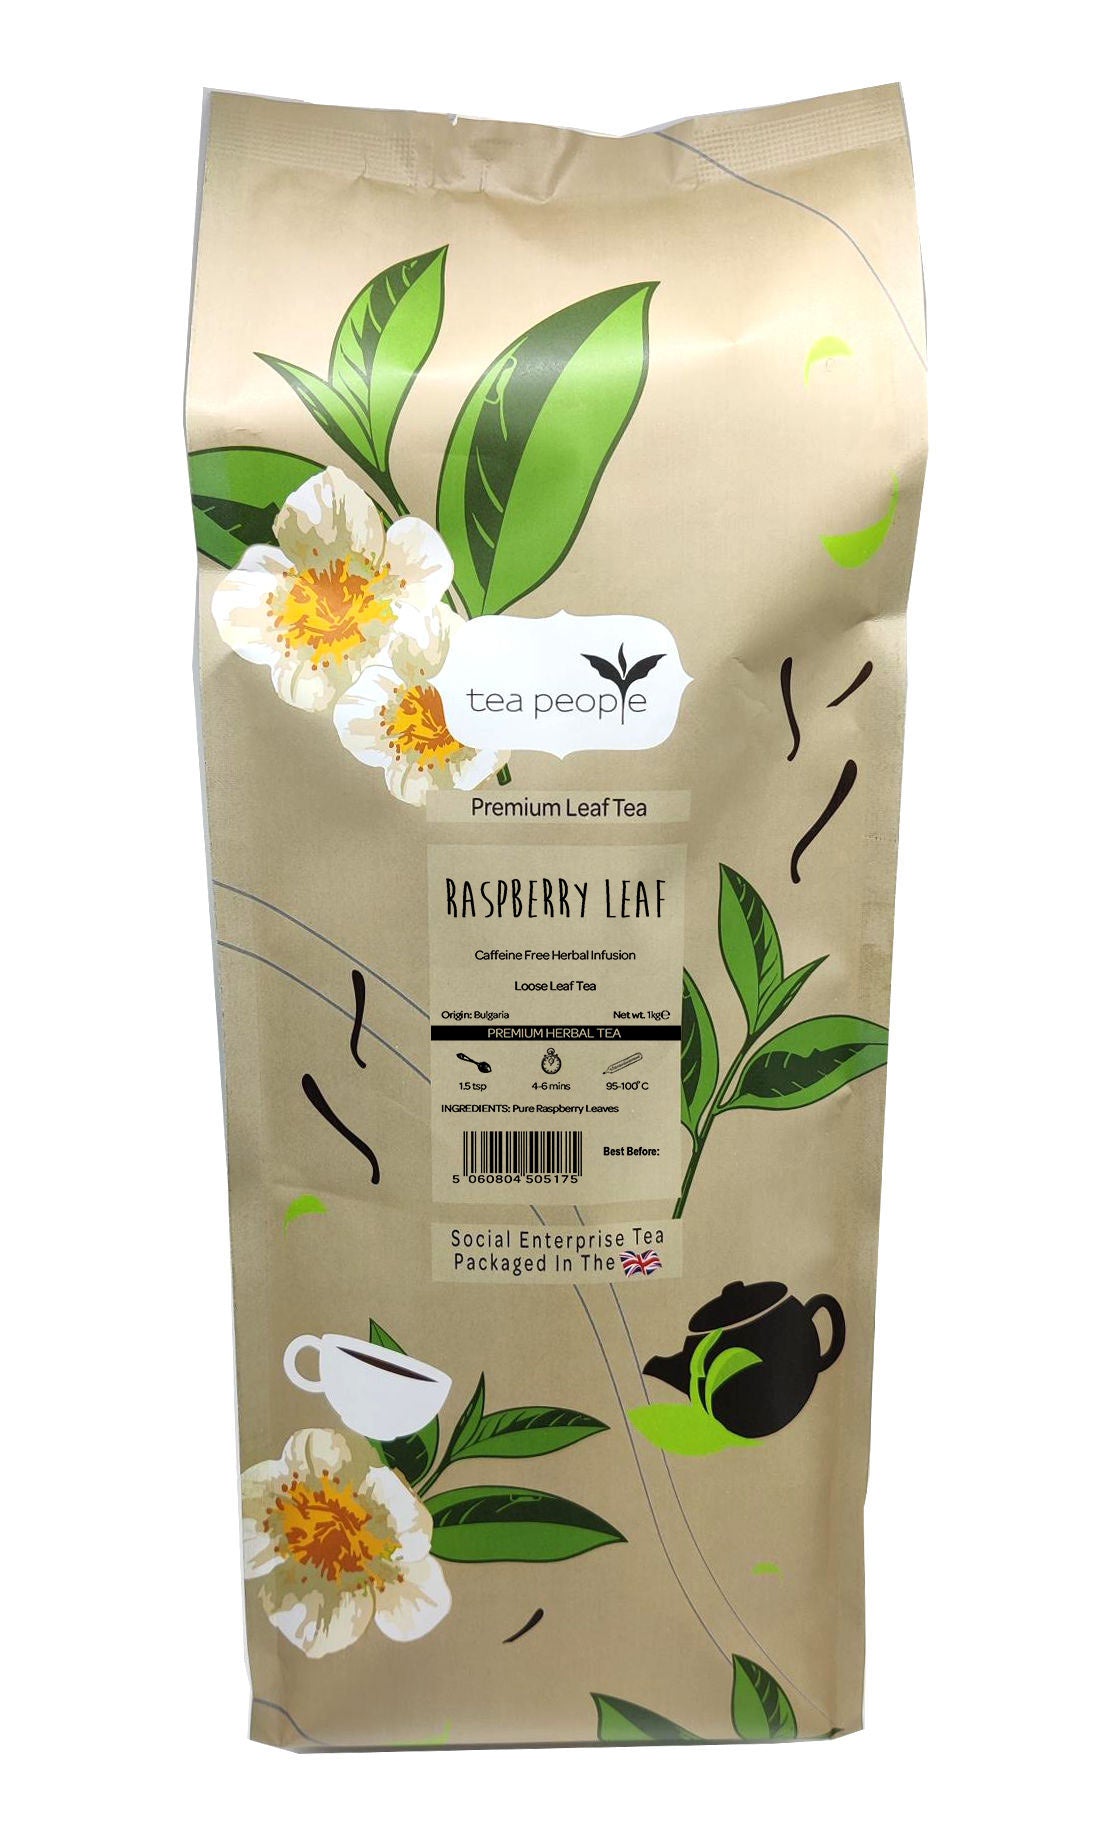 Raspberry Leaf Tea - Loose Herbal Tea - 1kg Large Catering Pack